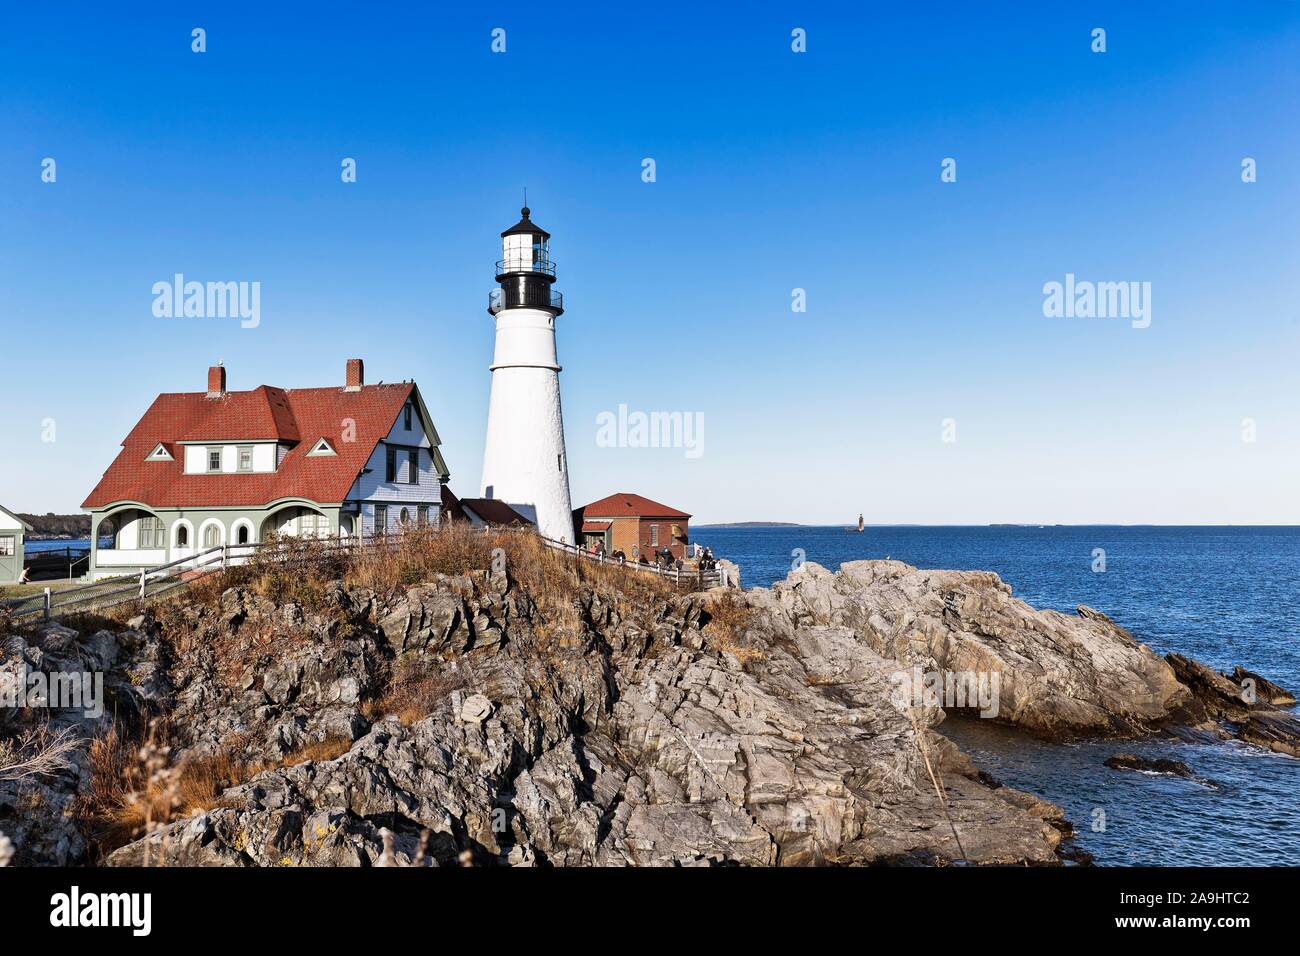 Lighthouse on rocky coast, Portland Head lighthouse, Cape Elizabeth, Portland, Maine, New England, USA Stock Photo